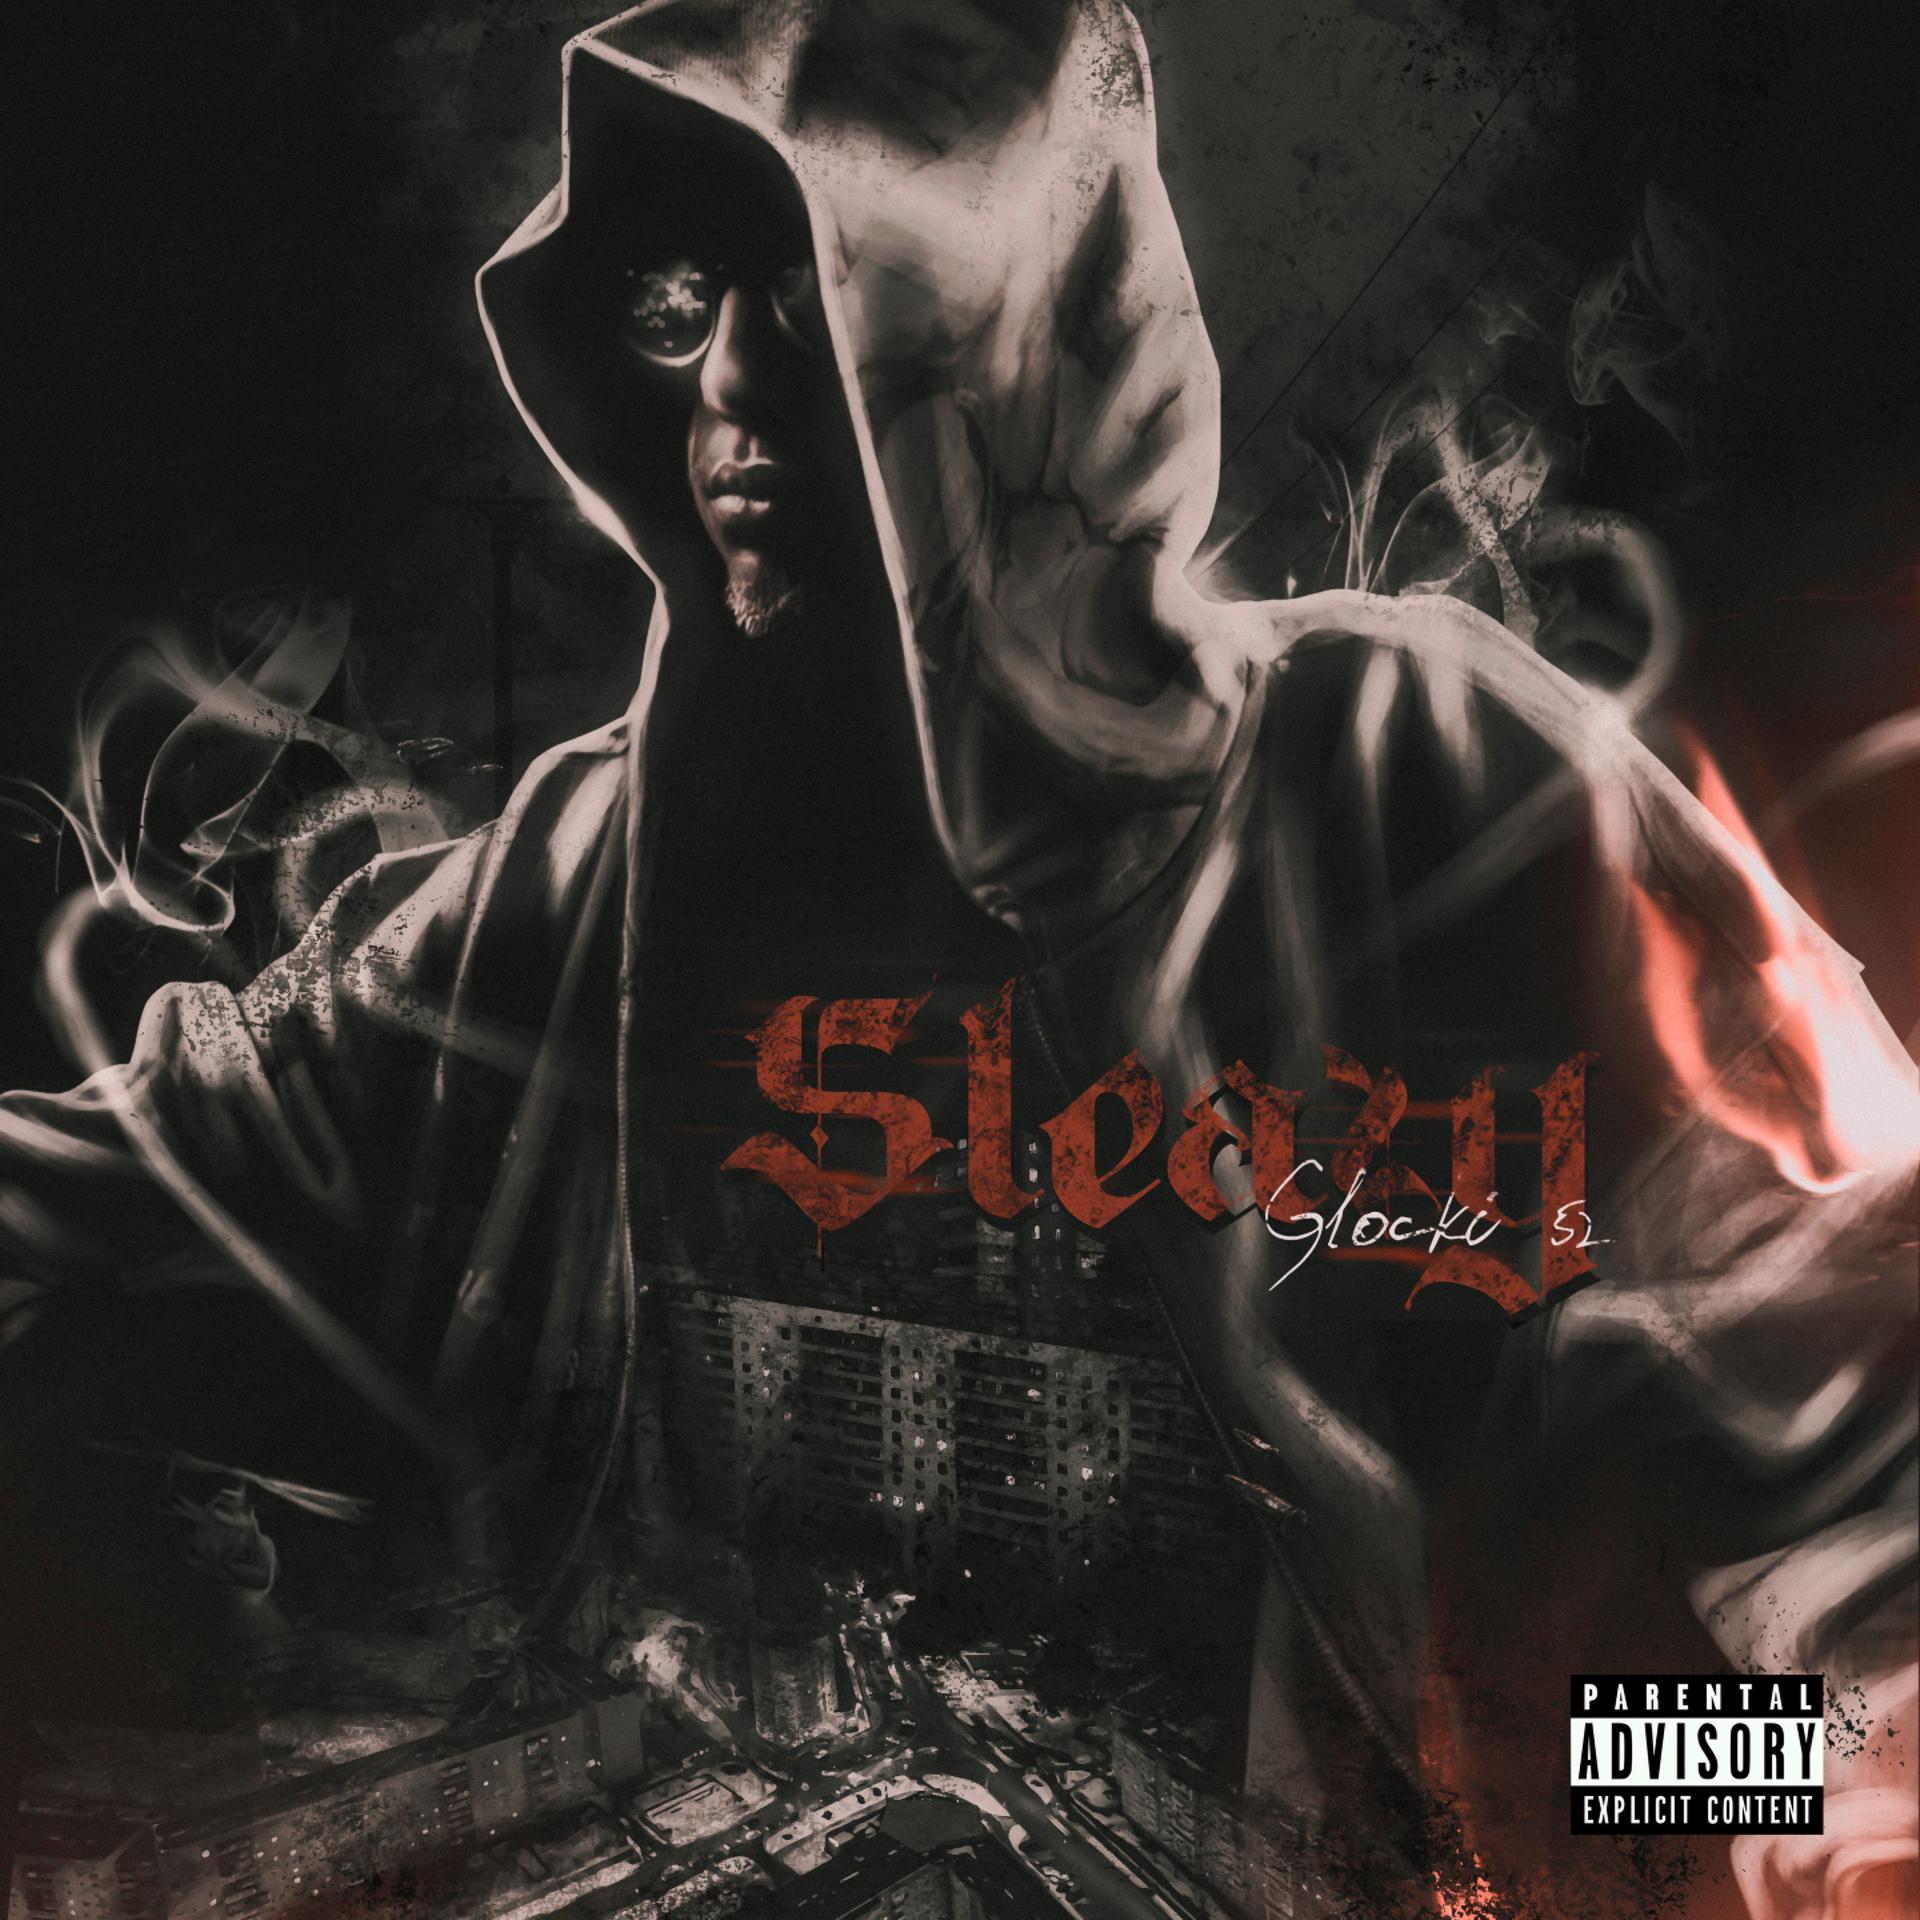 Постер альбома Sleazy